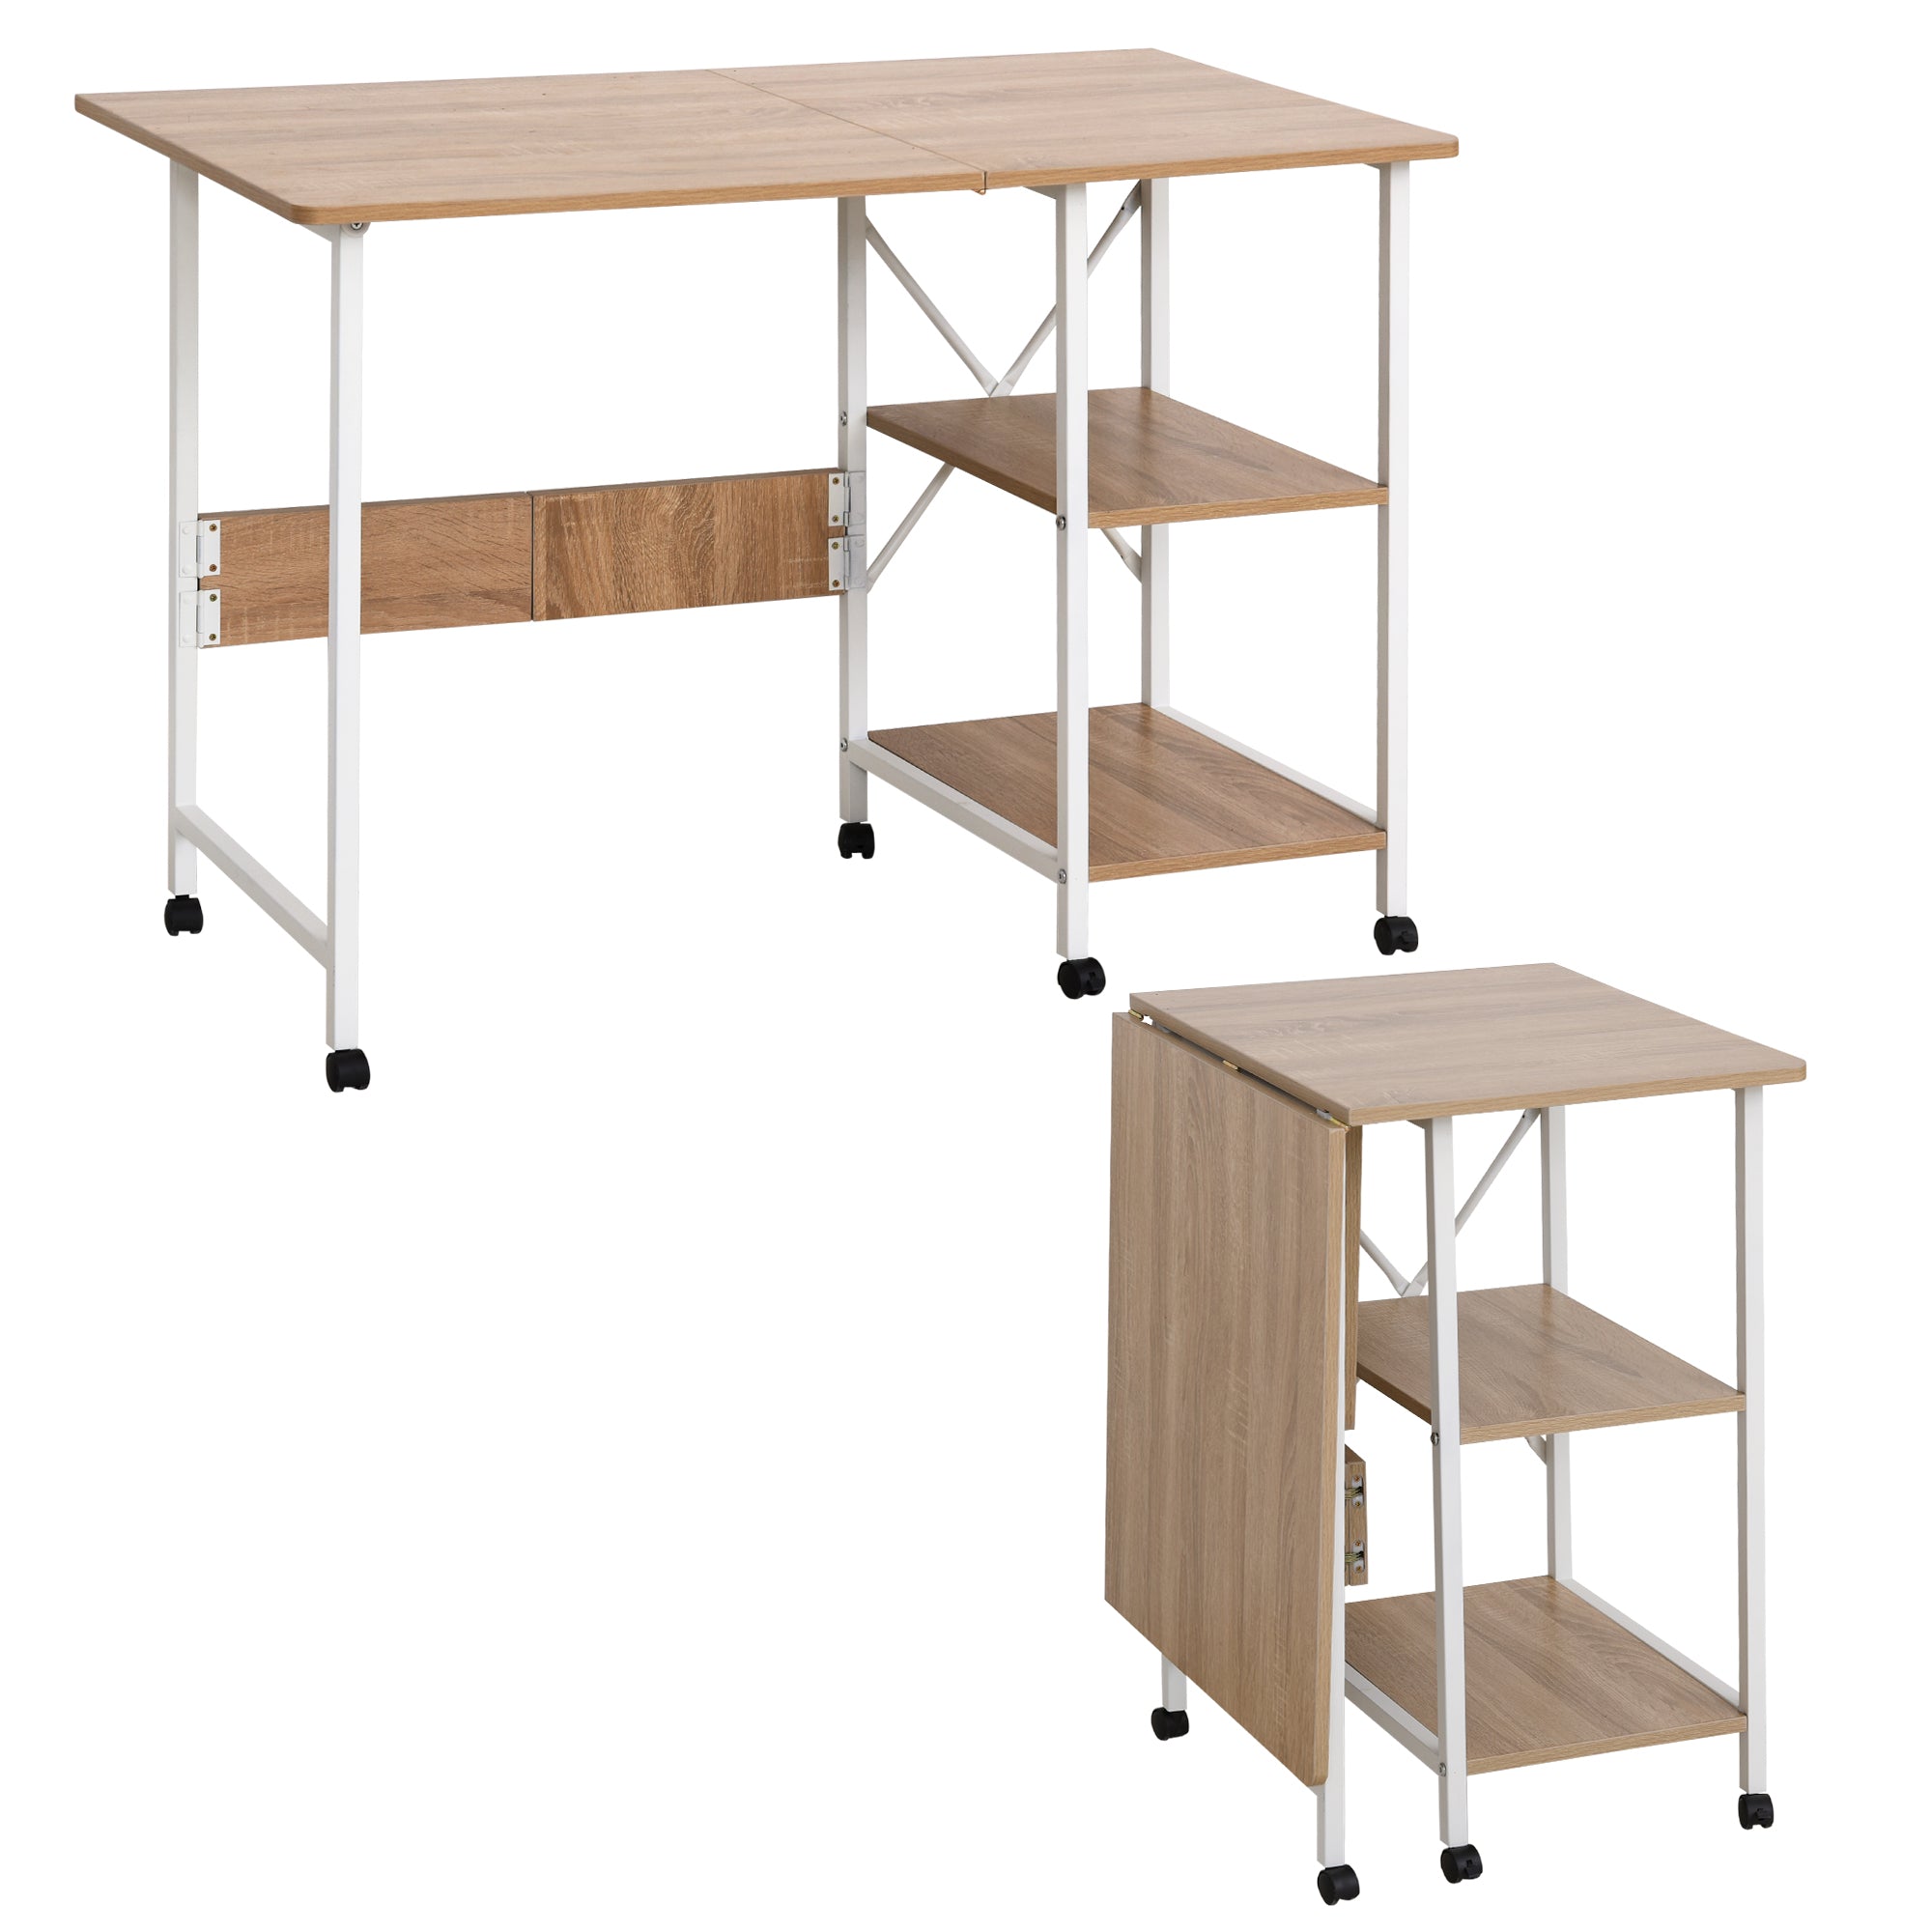 Nancy's Vancouver Folding Desk - Folding Table - Office Table - Desk - Wheels - Shelves - Anti-Slip - Natural - White